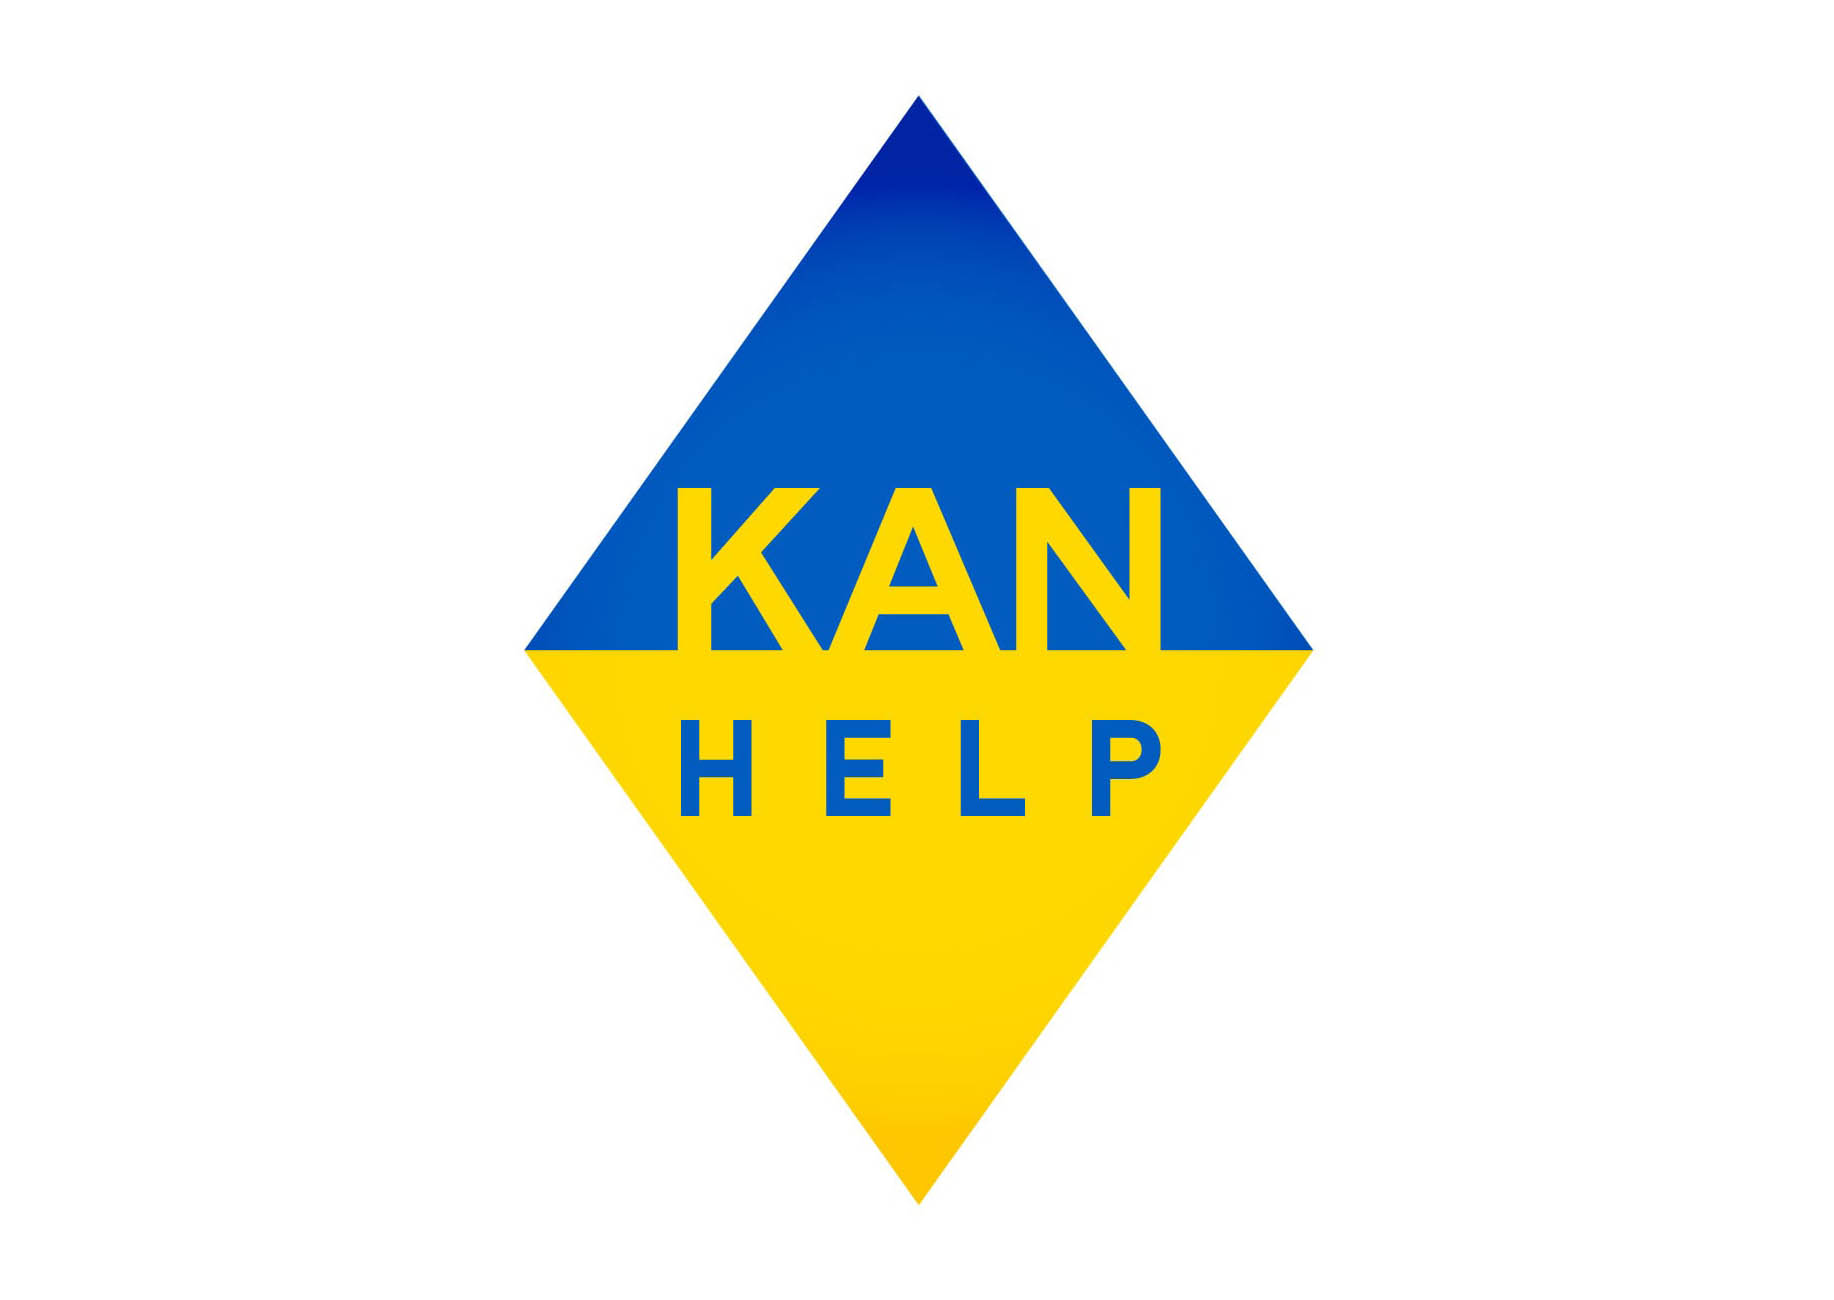 Звернення співробітників KAN Development до мешканців комплексів, які потребують допомоги